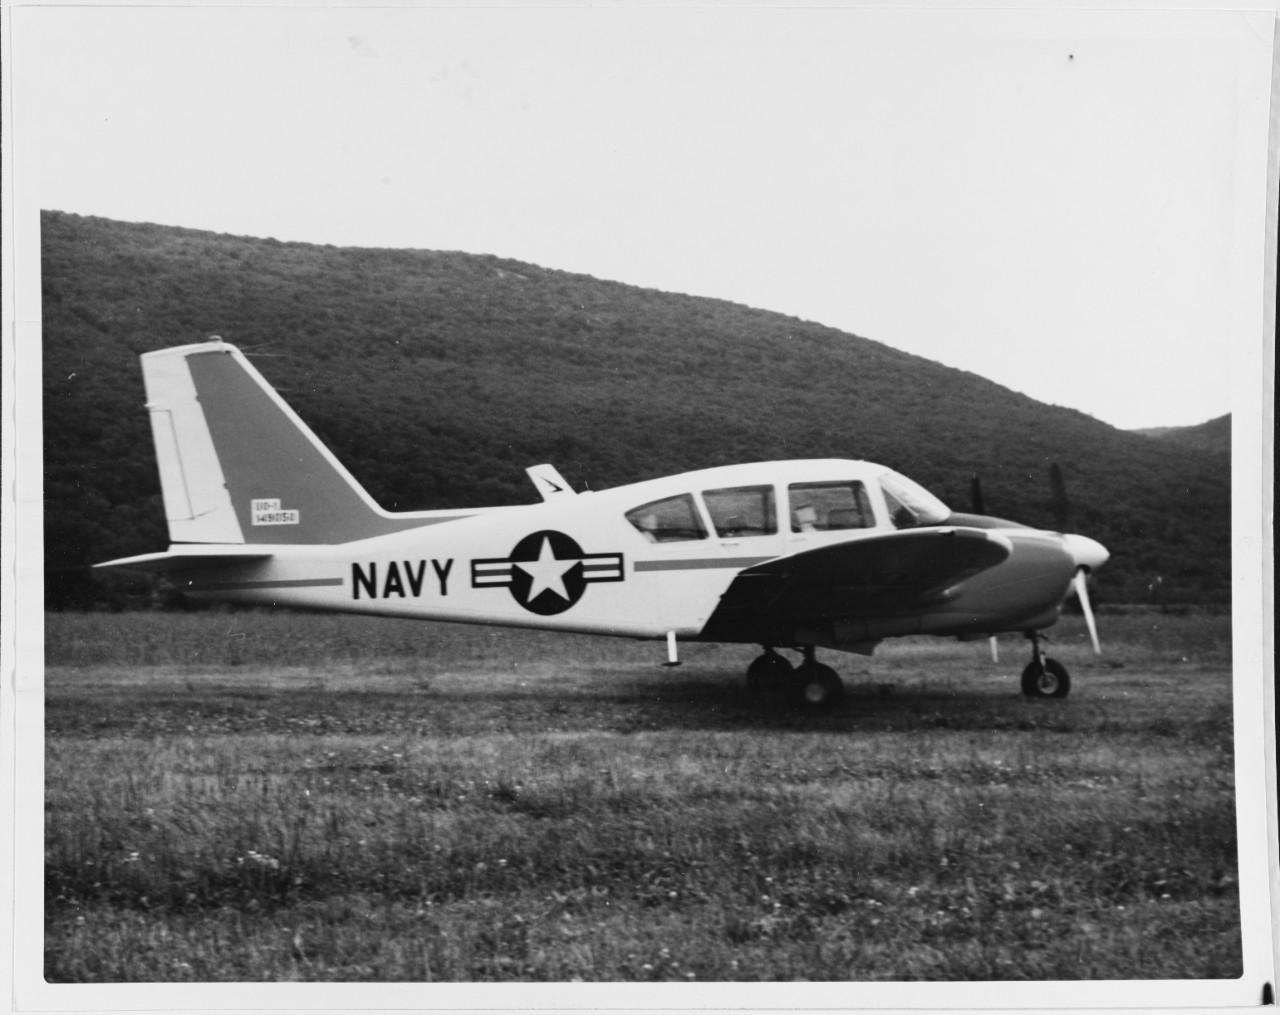 UO-1 (U-11A) "AZTEC". Photo received June 1961